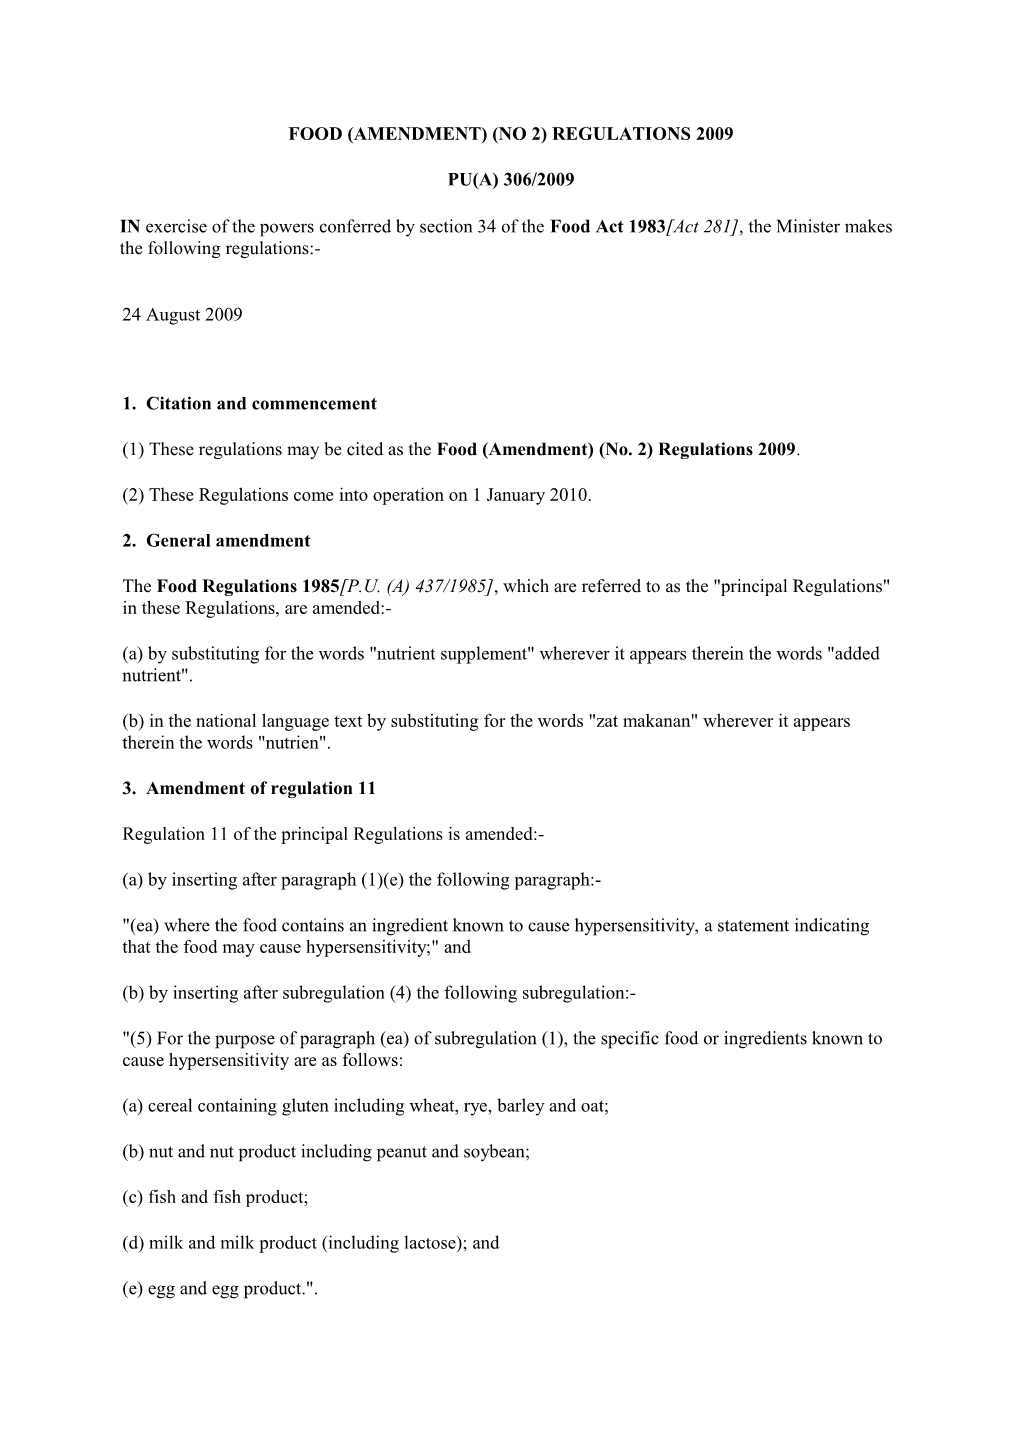 Food (Amendment) (No 2) Regulations 2009